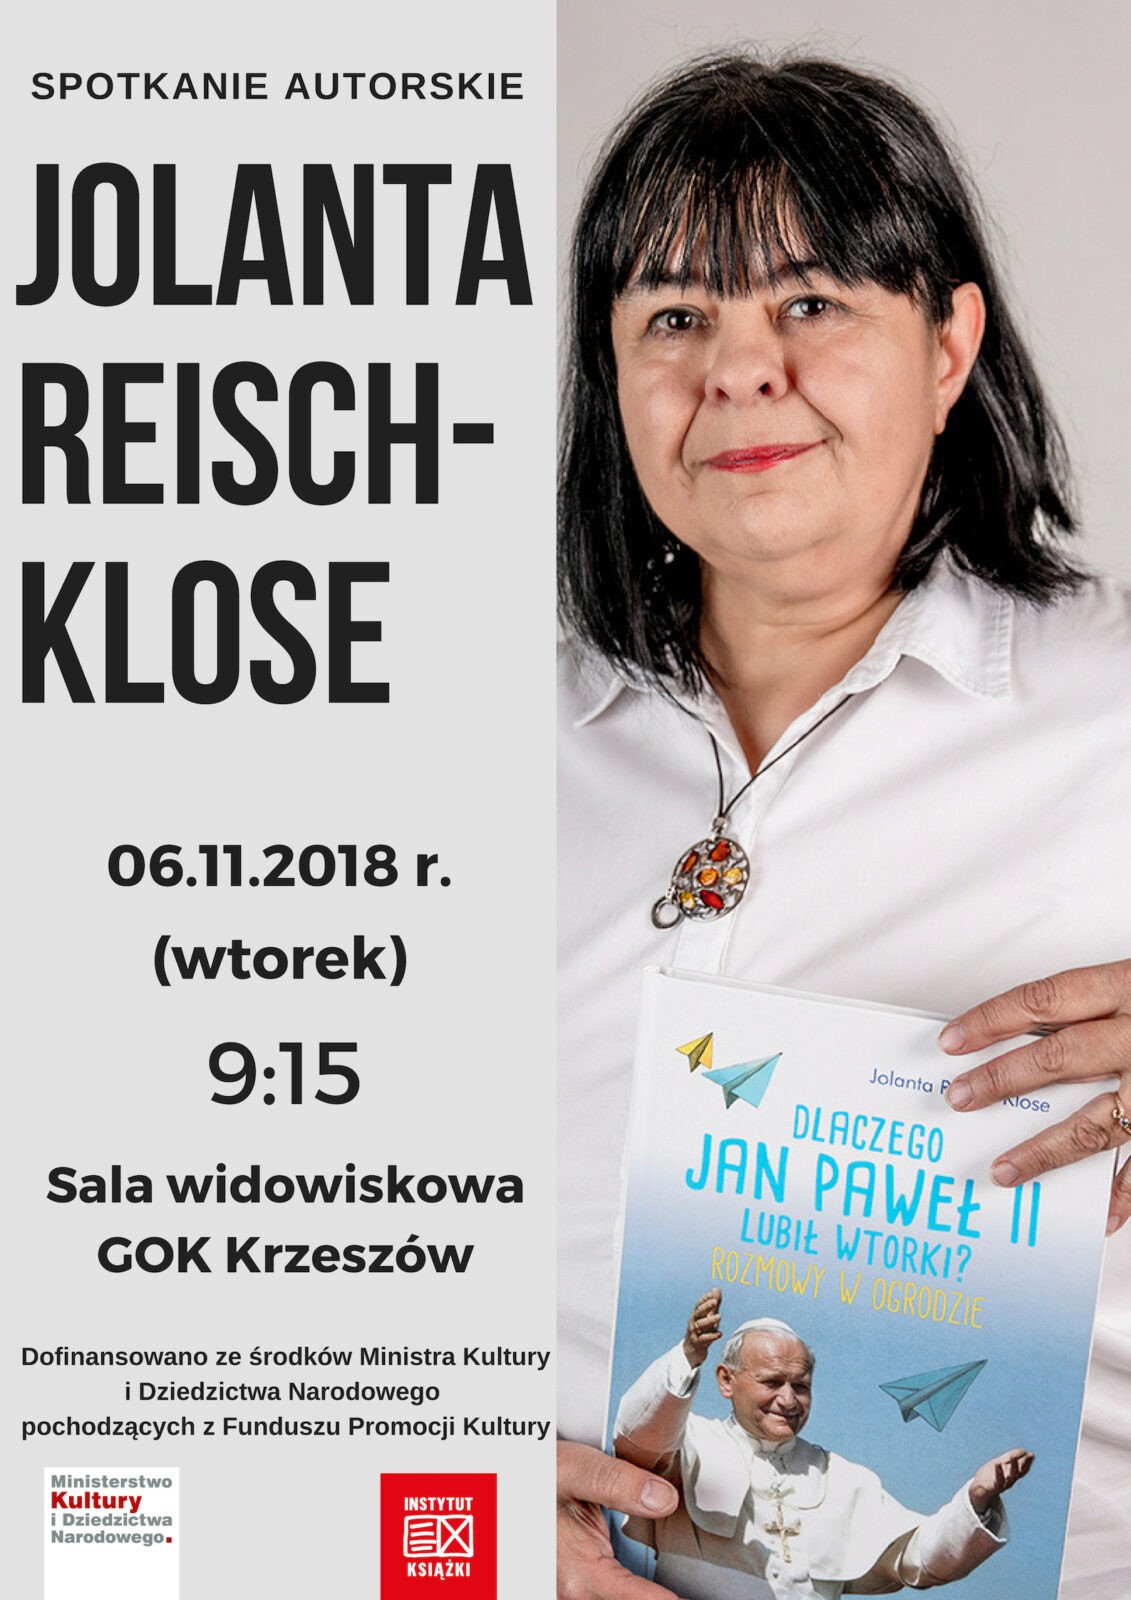 Spotkanie autorskie Jolanta Reisch-Klose